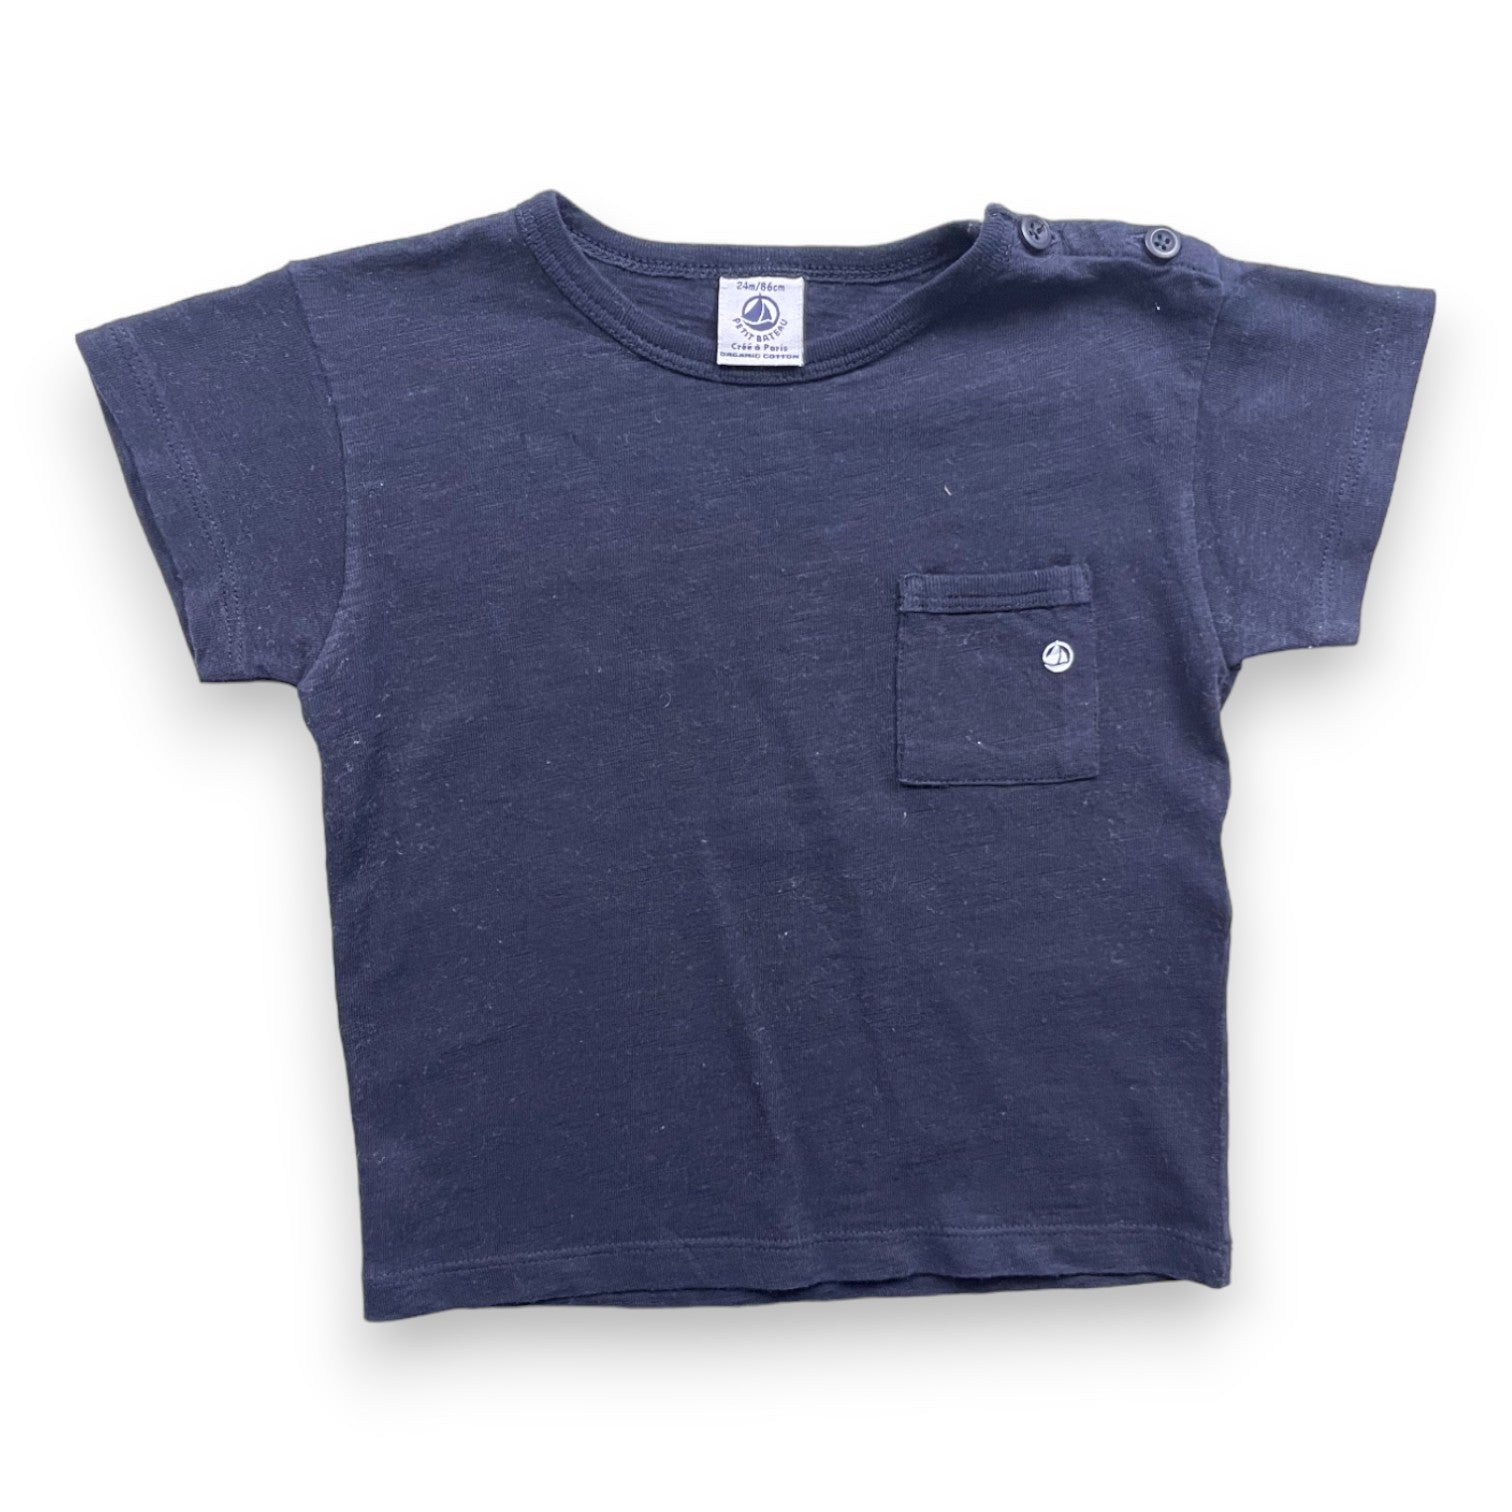 PETIT BATEAU - T shirt bleu nuit - 2 ans